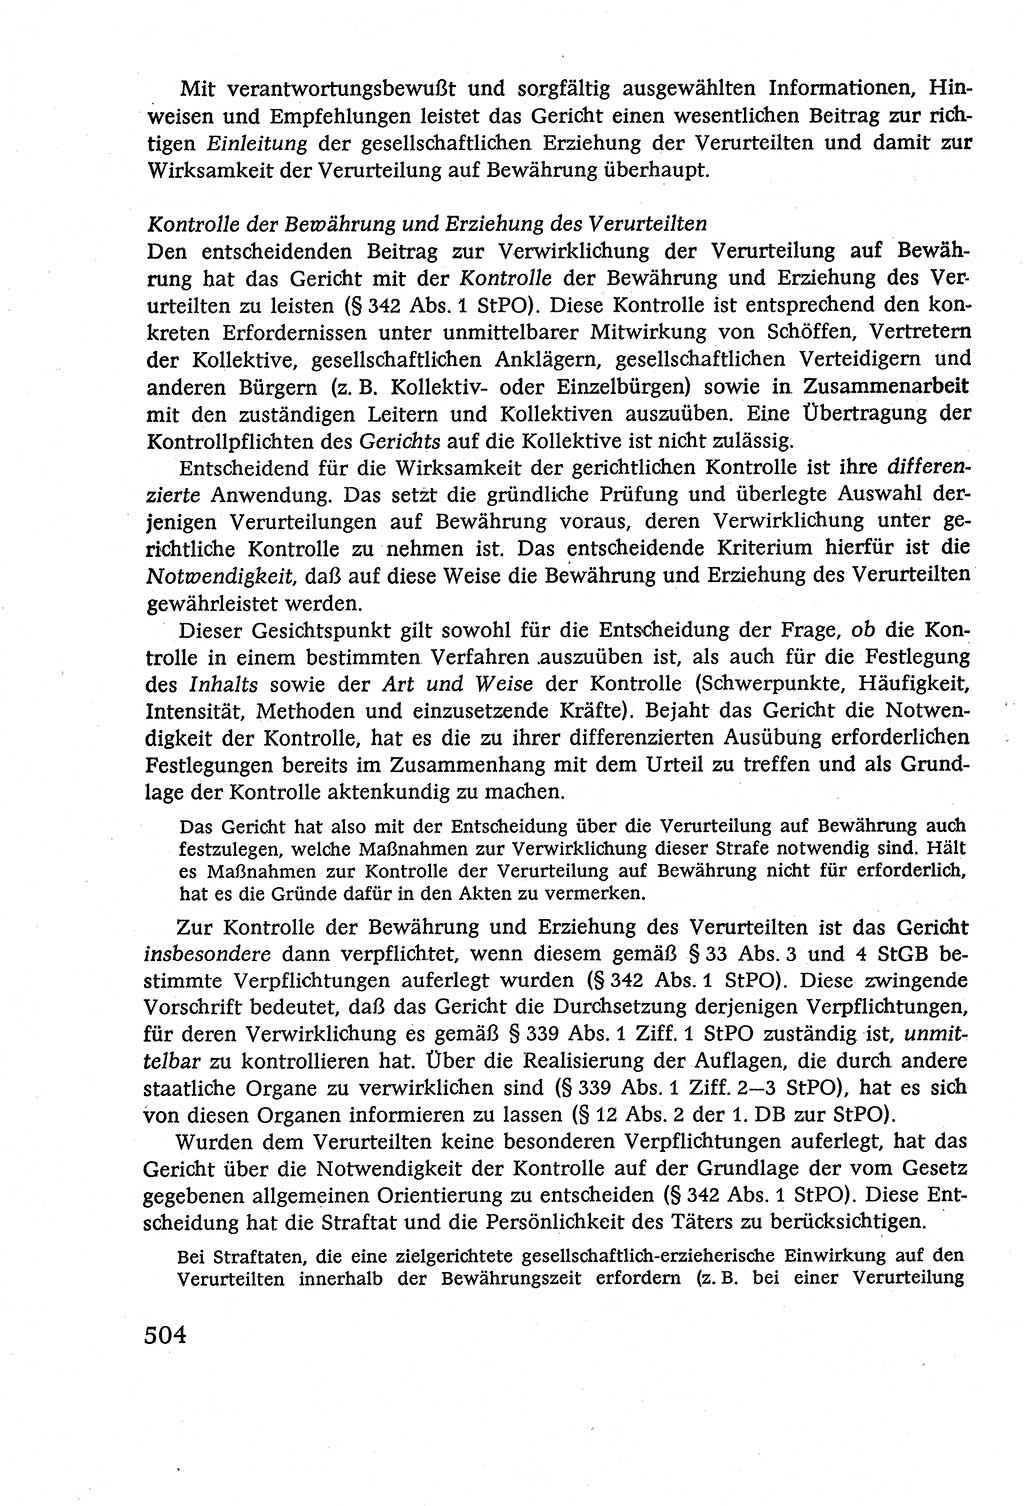 Strafverfahrensrecht [Deutsche Demokratische Republik (DDR)], Lehrbuch 1977, Seite 504 (Strafverf.-R. DDR Lb. 1977, S. 504)